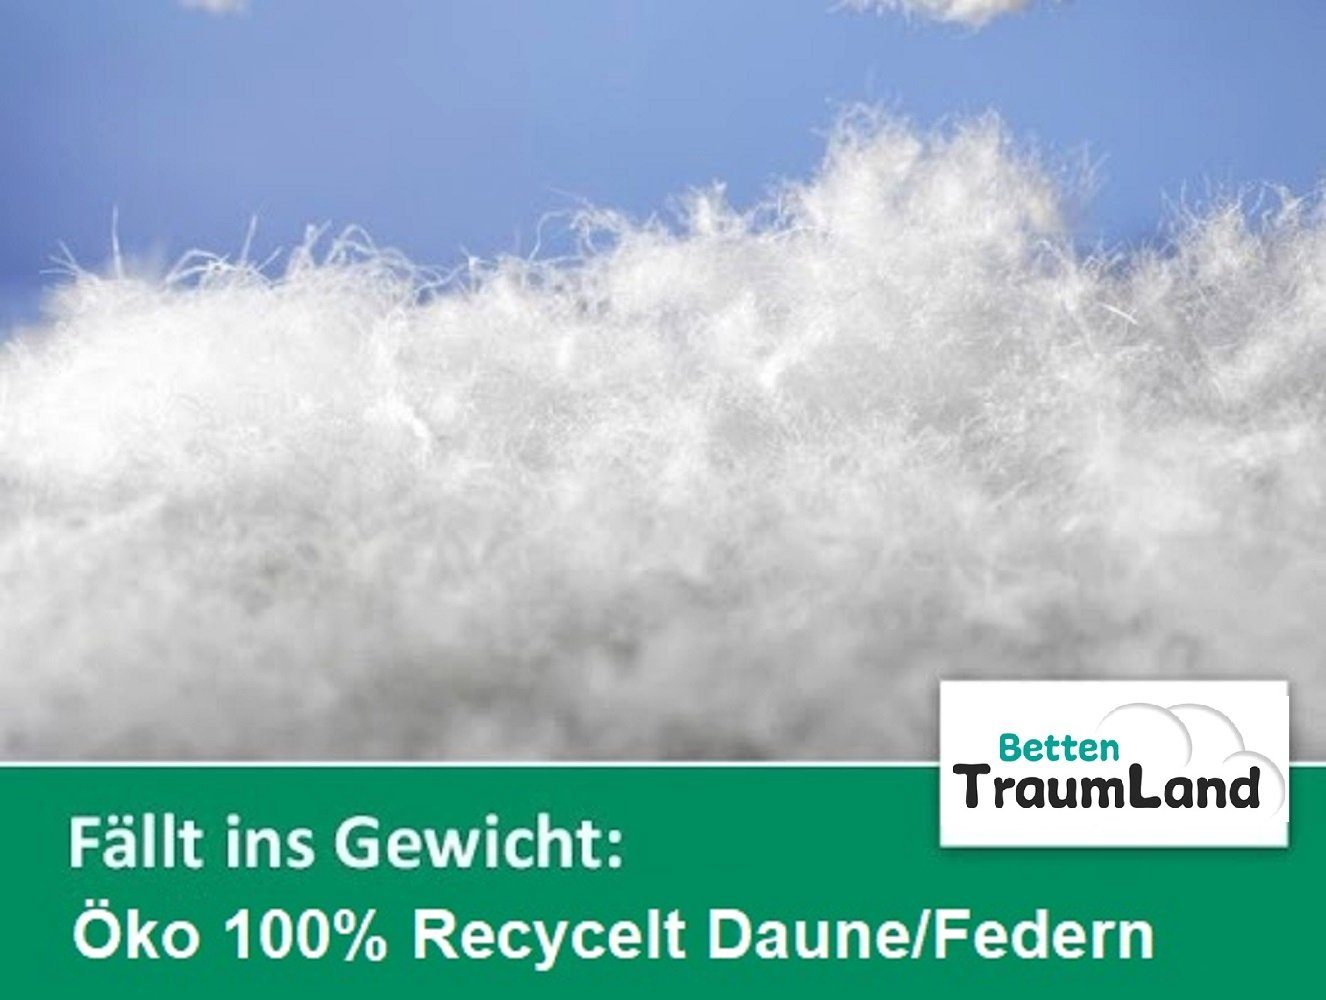 Betten ökologisch in Deutschland Sommerdecke Öko nachhaltig Daunen, 100% Traumland, Füllung: Daune, hergestellt Daunenbettdecke,